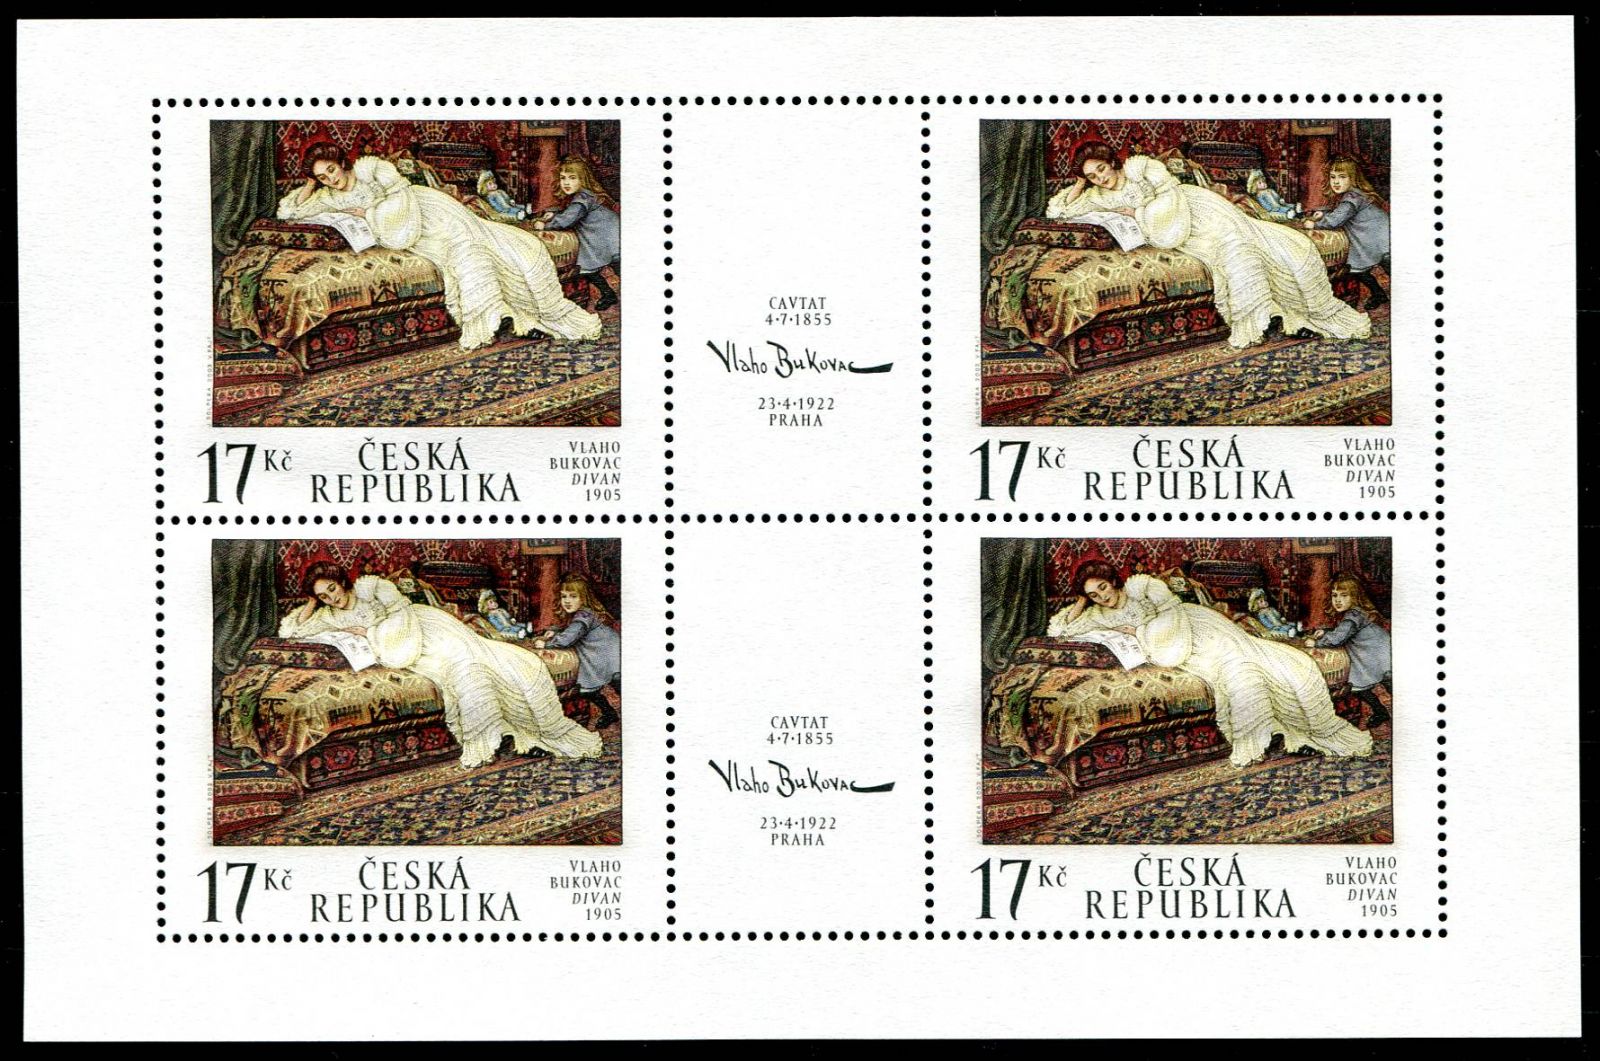 Česká pošta (2002) PL 319 ** - Česká republika - Umění 2002 I.